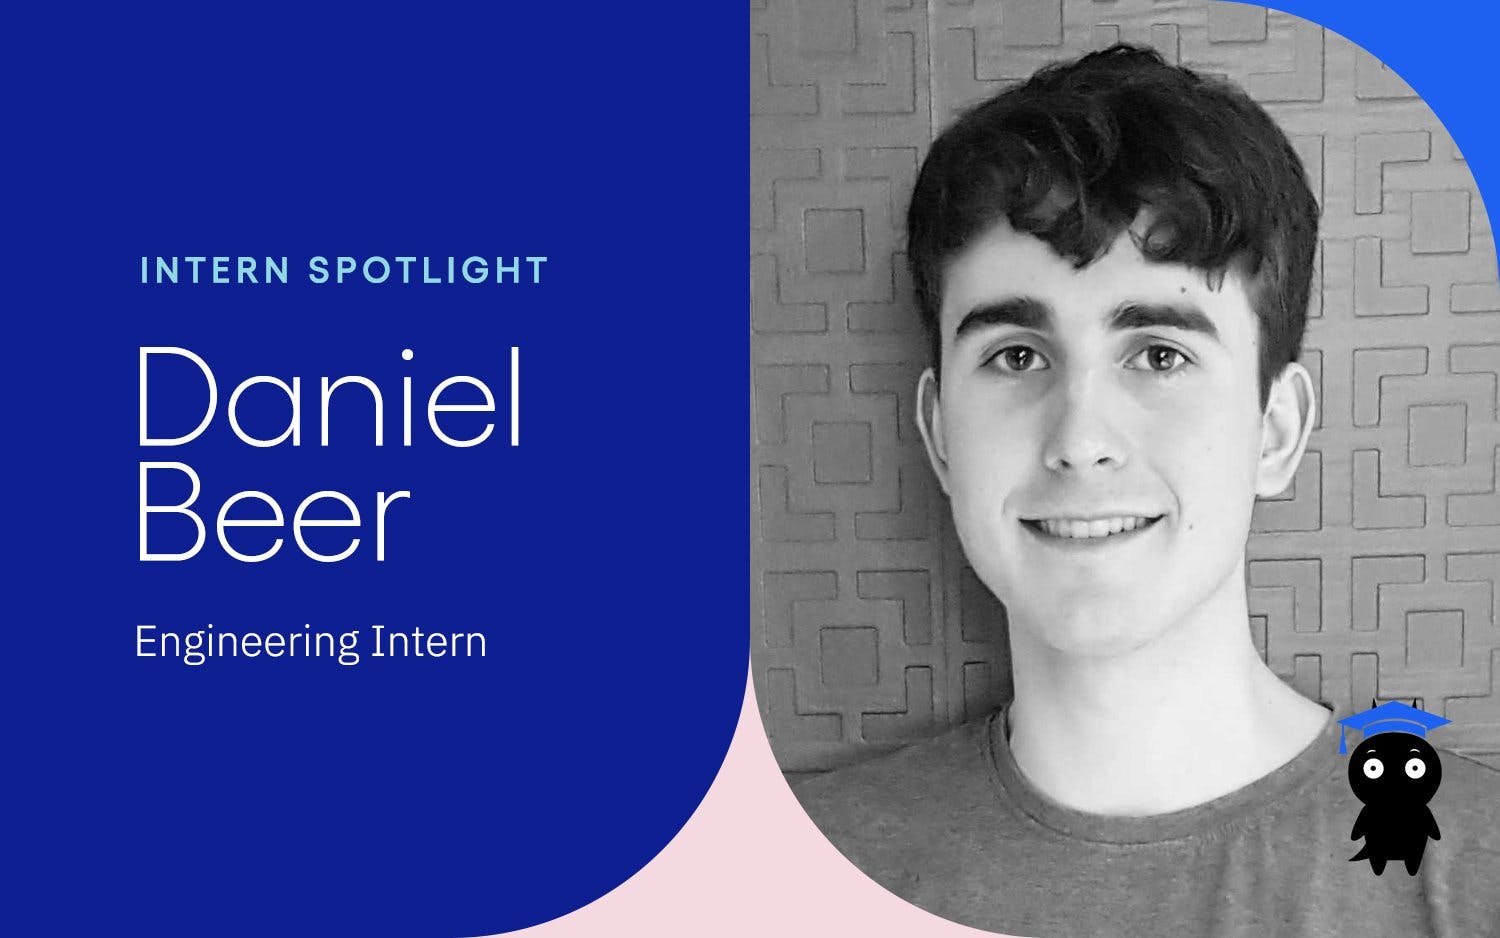 Intern Spotlight: Daniel Beer, Engineering Intern